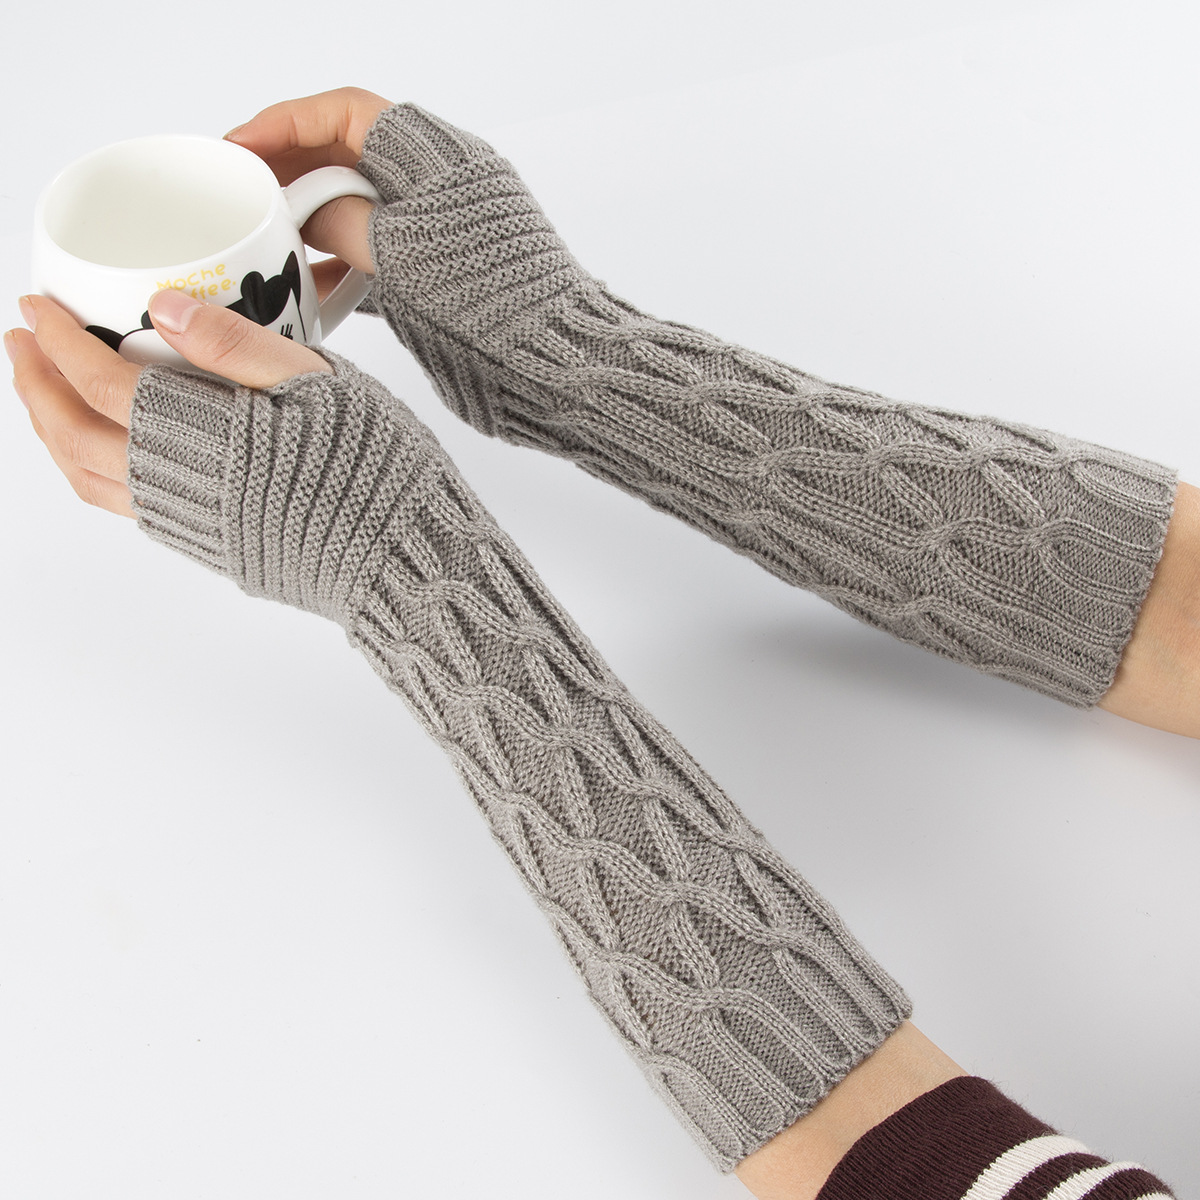 温暖从手开始，制作可爱毛线手套 - 知乎